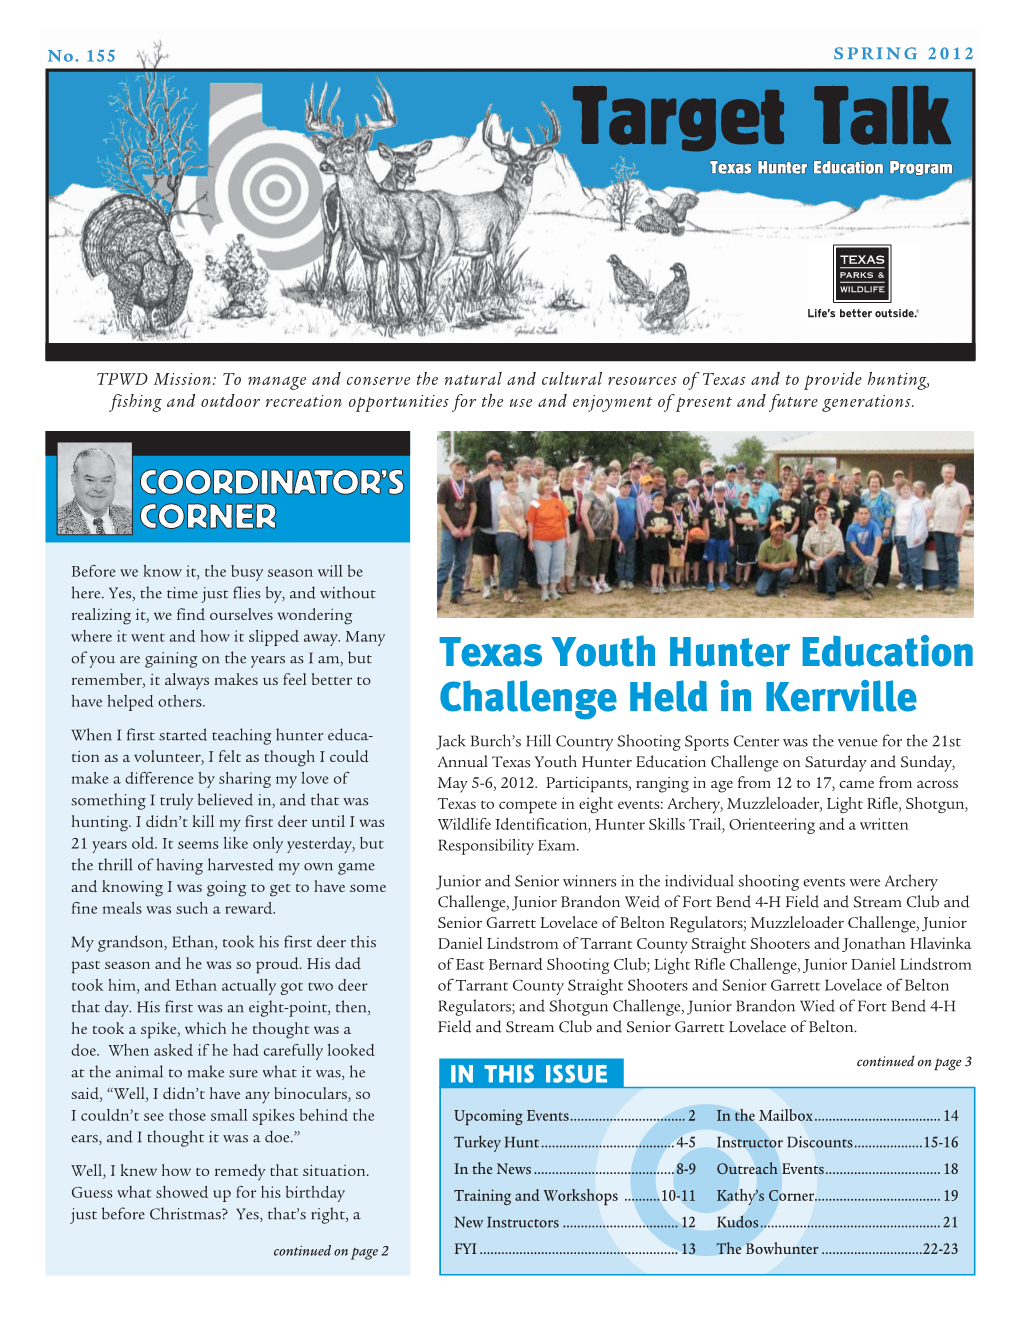 Target Talk Texas Hunter Education Program